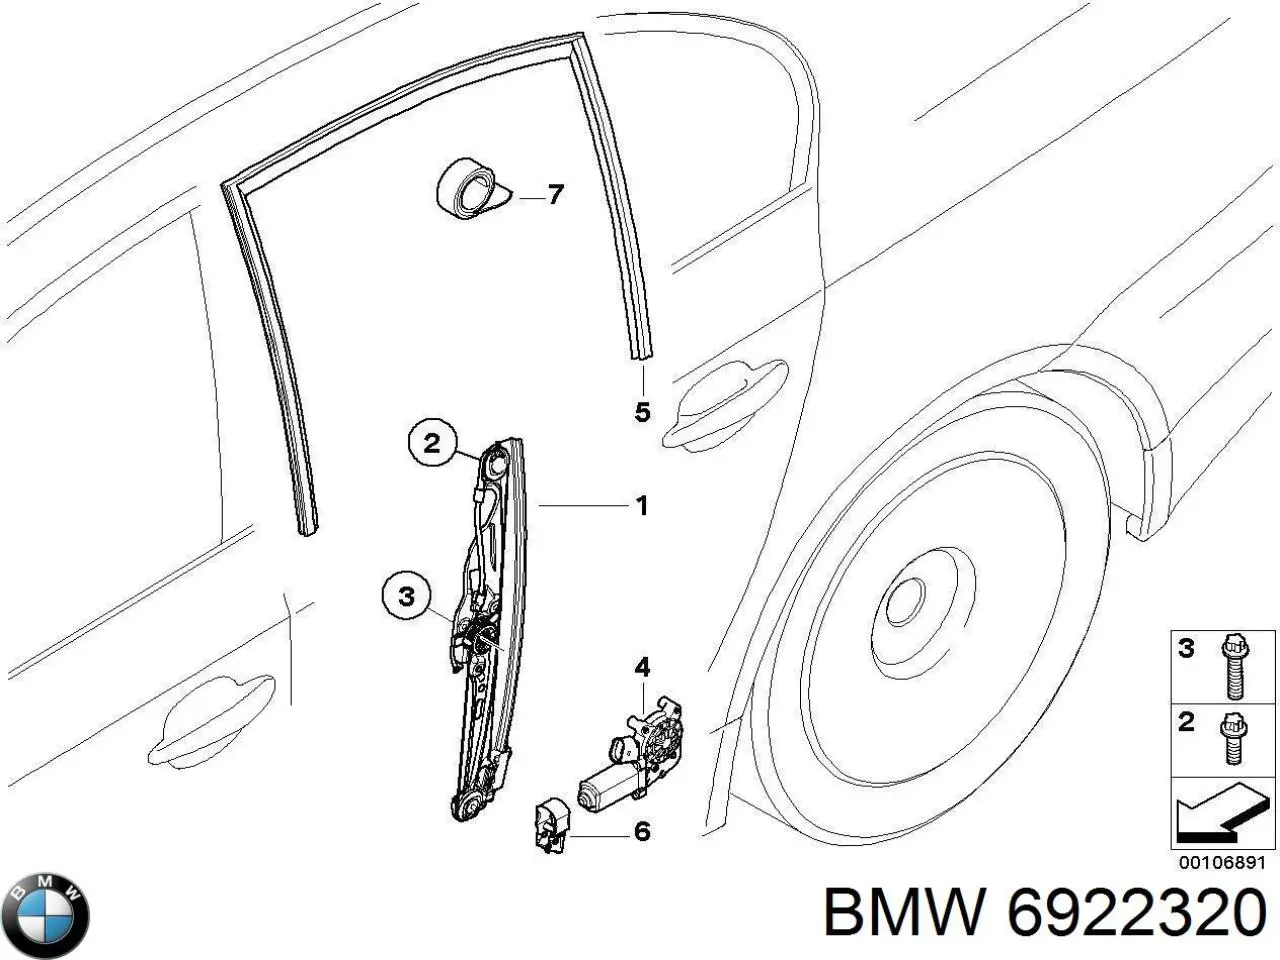 6922320 BMW motor eléctrico, elevalunas, puerta trasera derecha